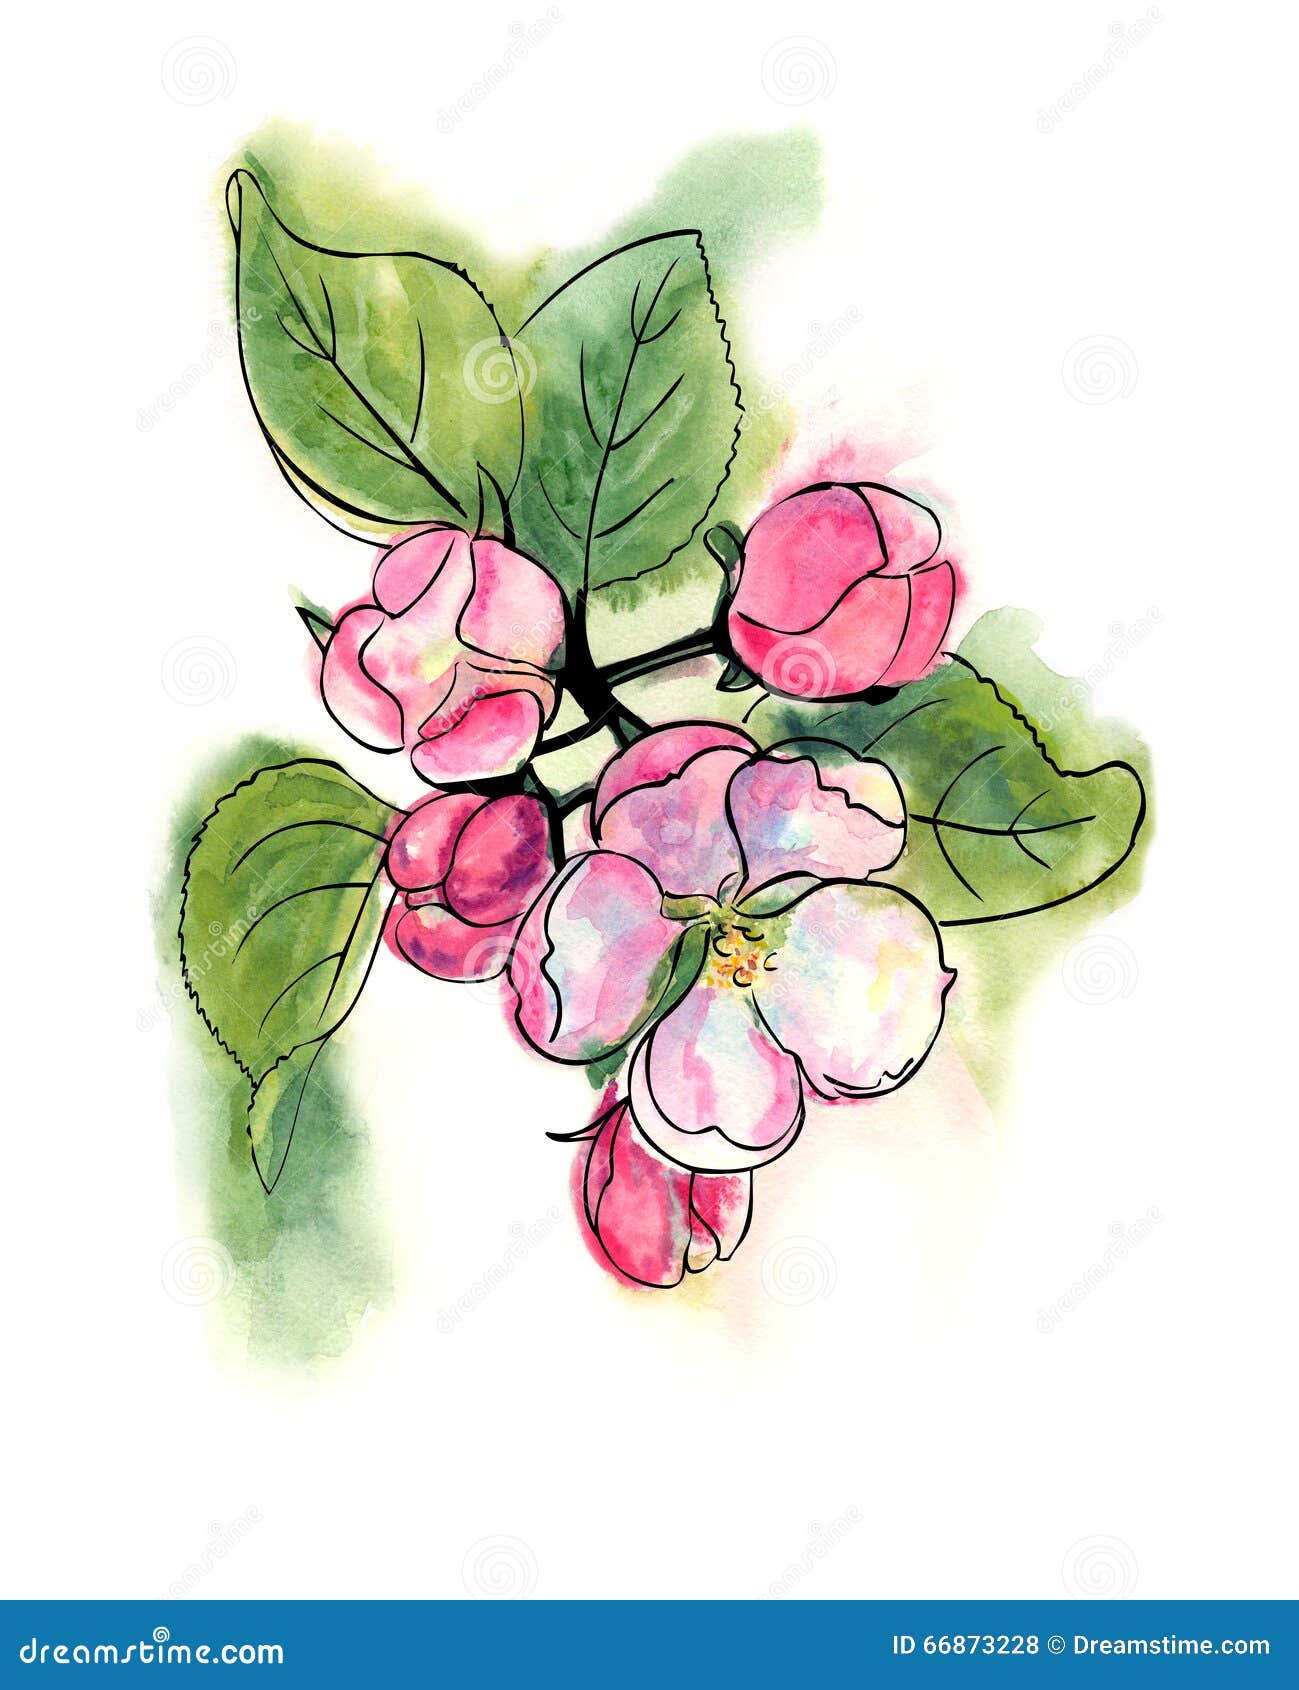 Spring blossoms stock illustration. Illustration of landscape - 66873228